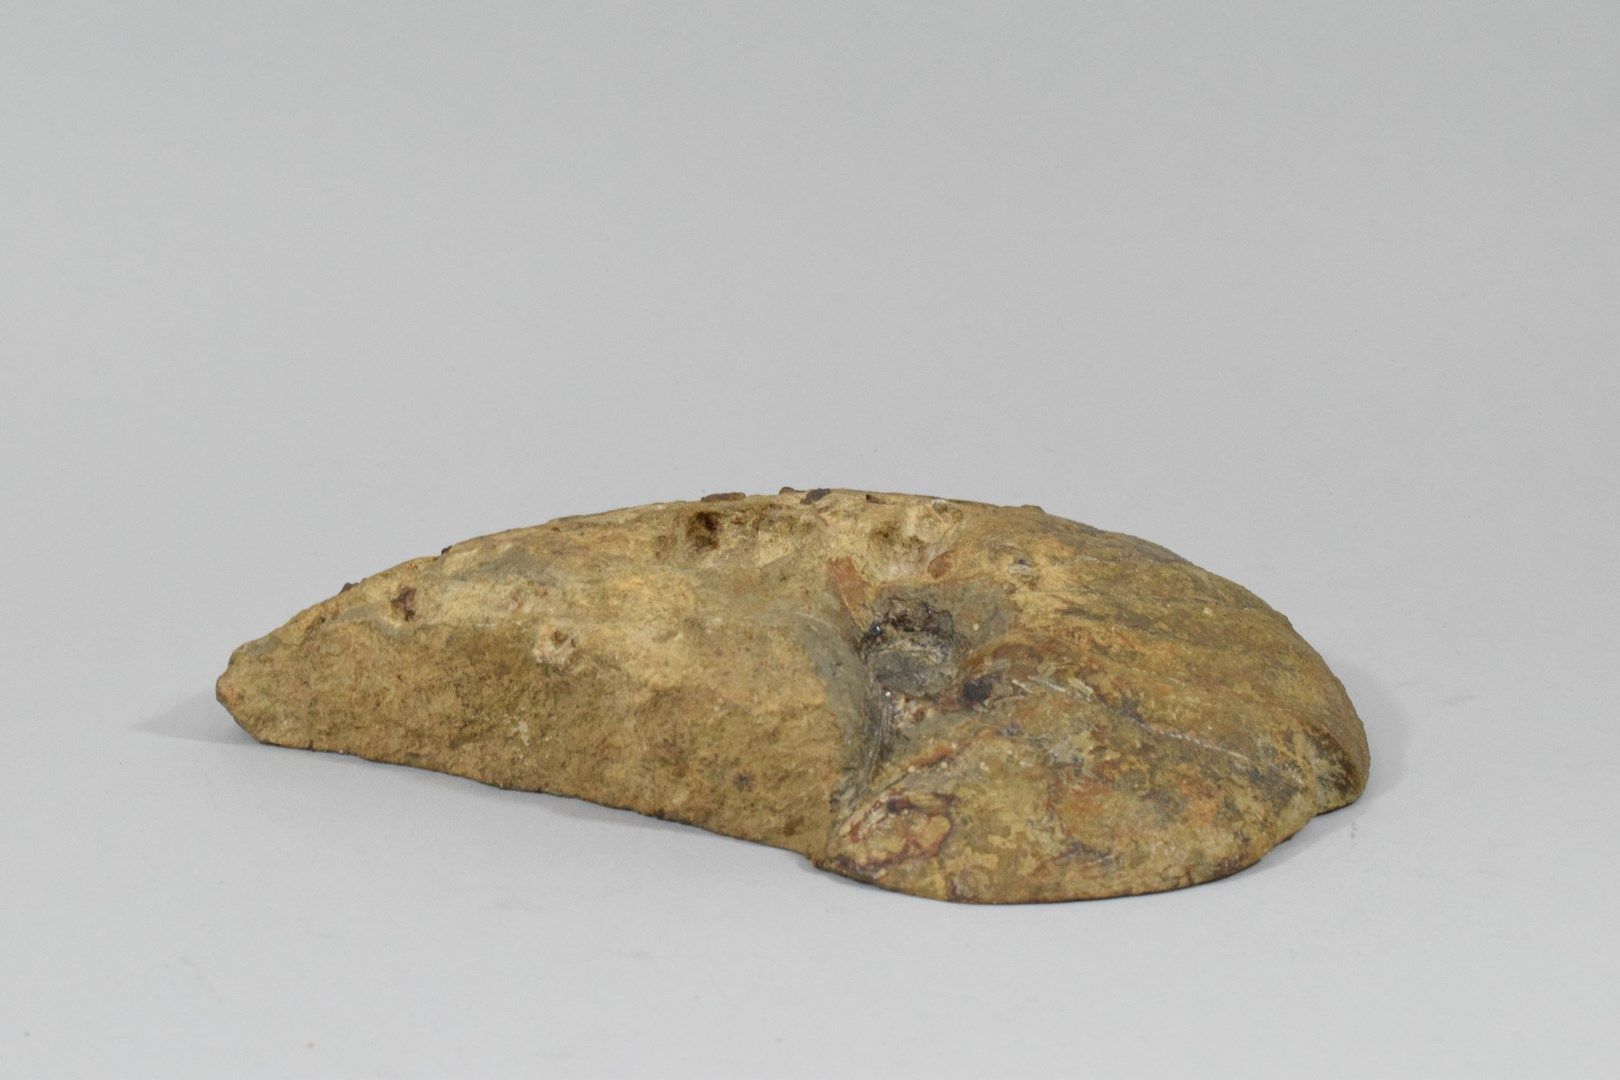 Null Ammonite fossilizzata.

Bordo lucido. 

Alcune patatine. 

Dimensioni: 25 x&hellip;